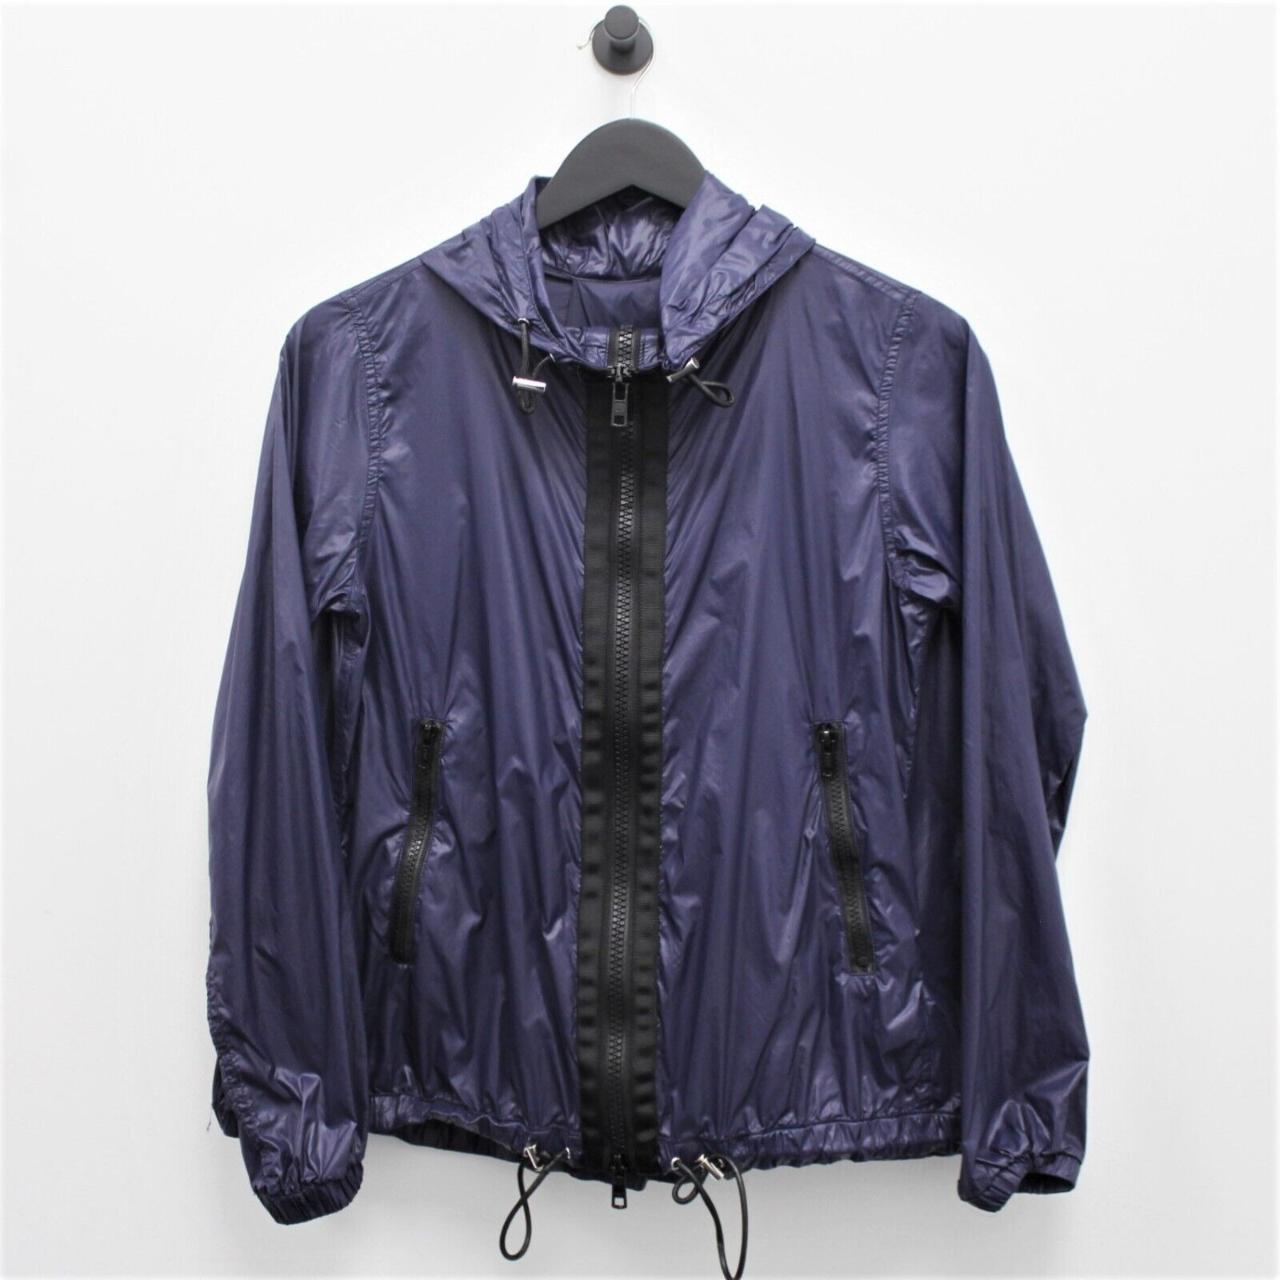 Sacai Windbreaker Jacket Men Size 1 Blue Hooded Long... - Depop